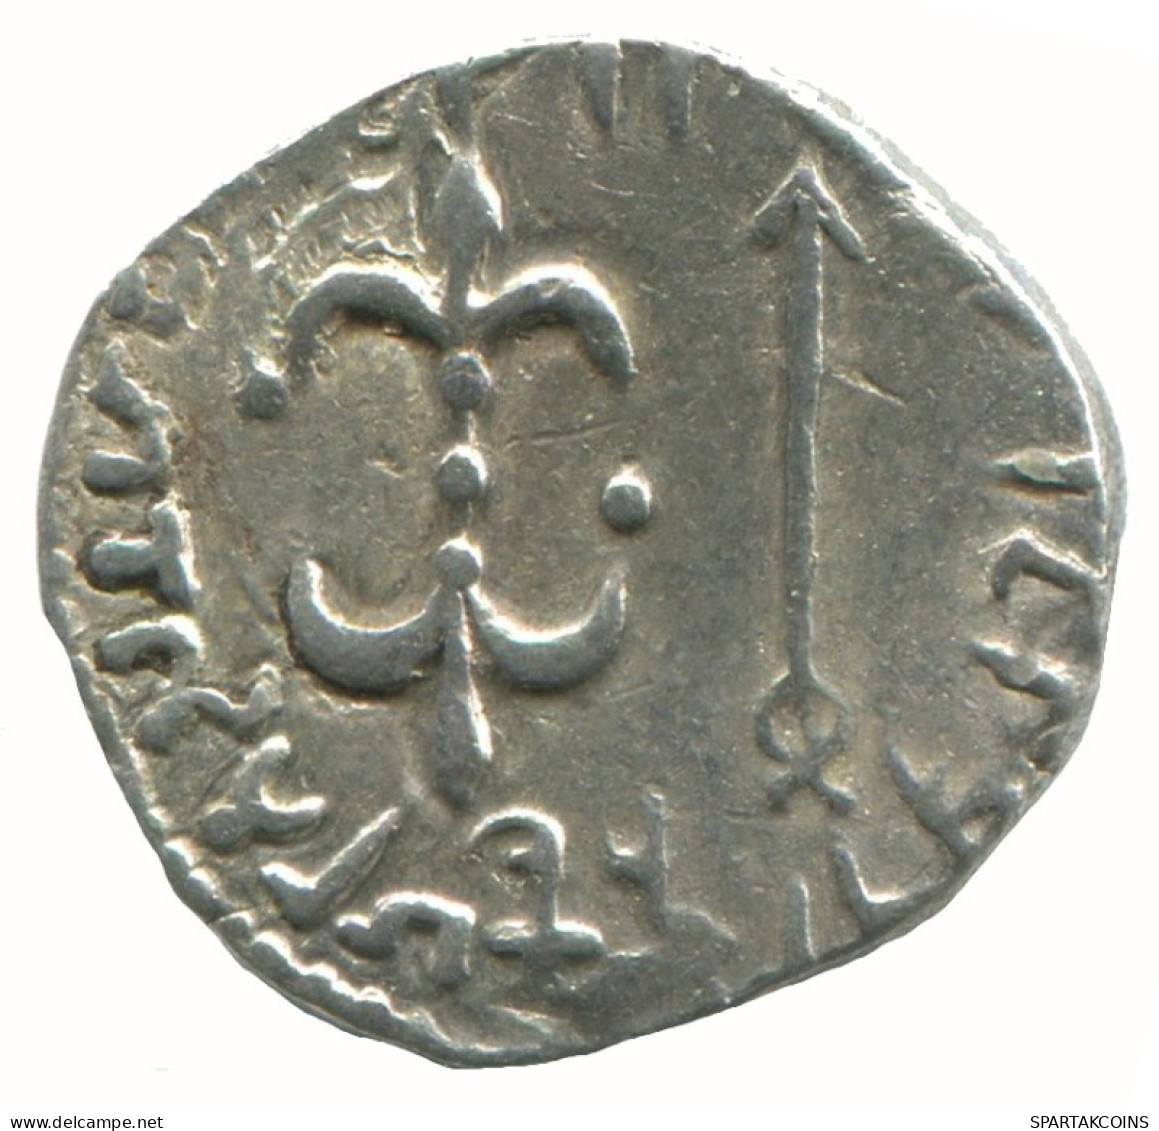 INDO-SKYTHIANS WESTERN KSHATRAPAS KING NAHAPANA AR DRACHM GREEK #AA393.40.U.A - Griechische Münzen